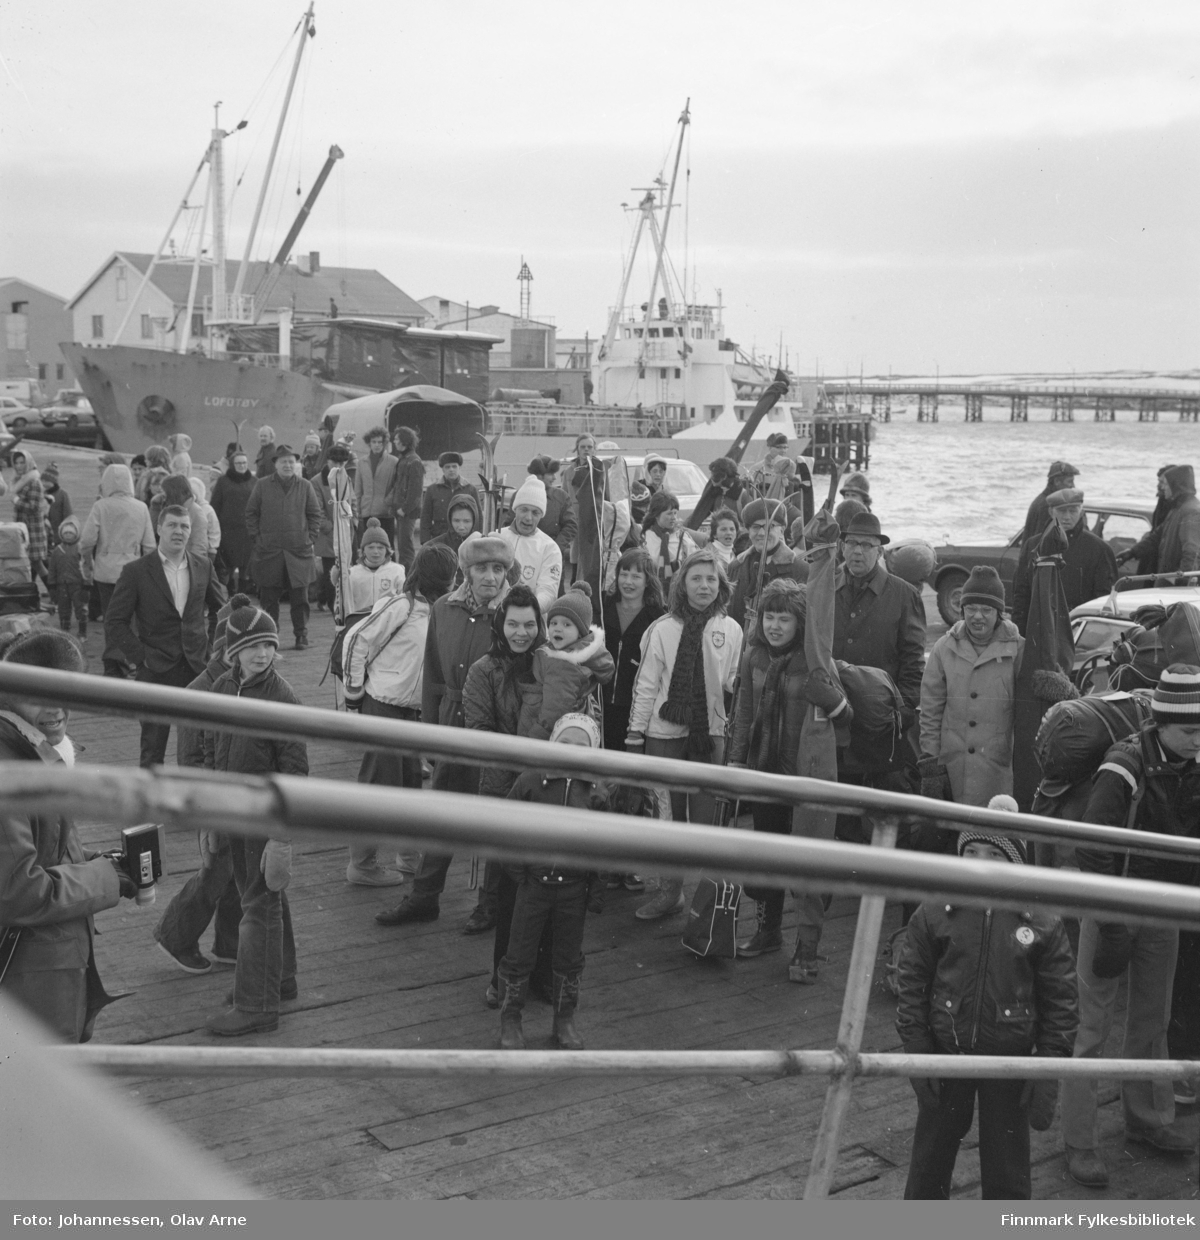 Foto tatt i Svolvær

I bakgrunnen kan man se et skip med navnet "Lofotøy"